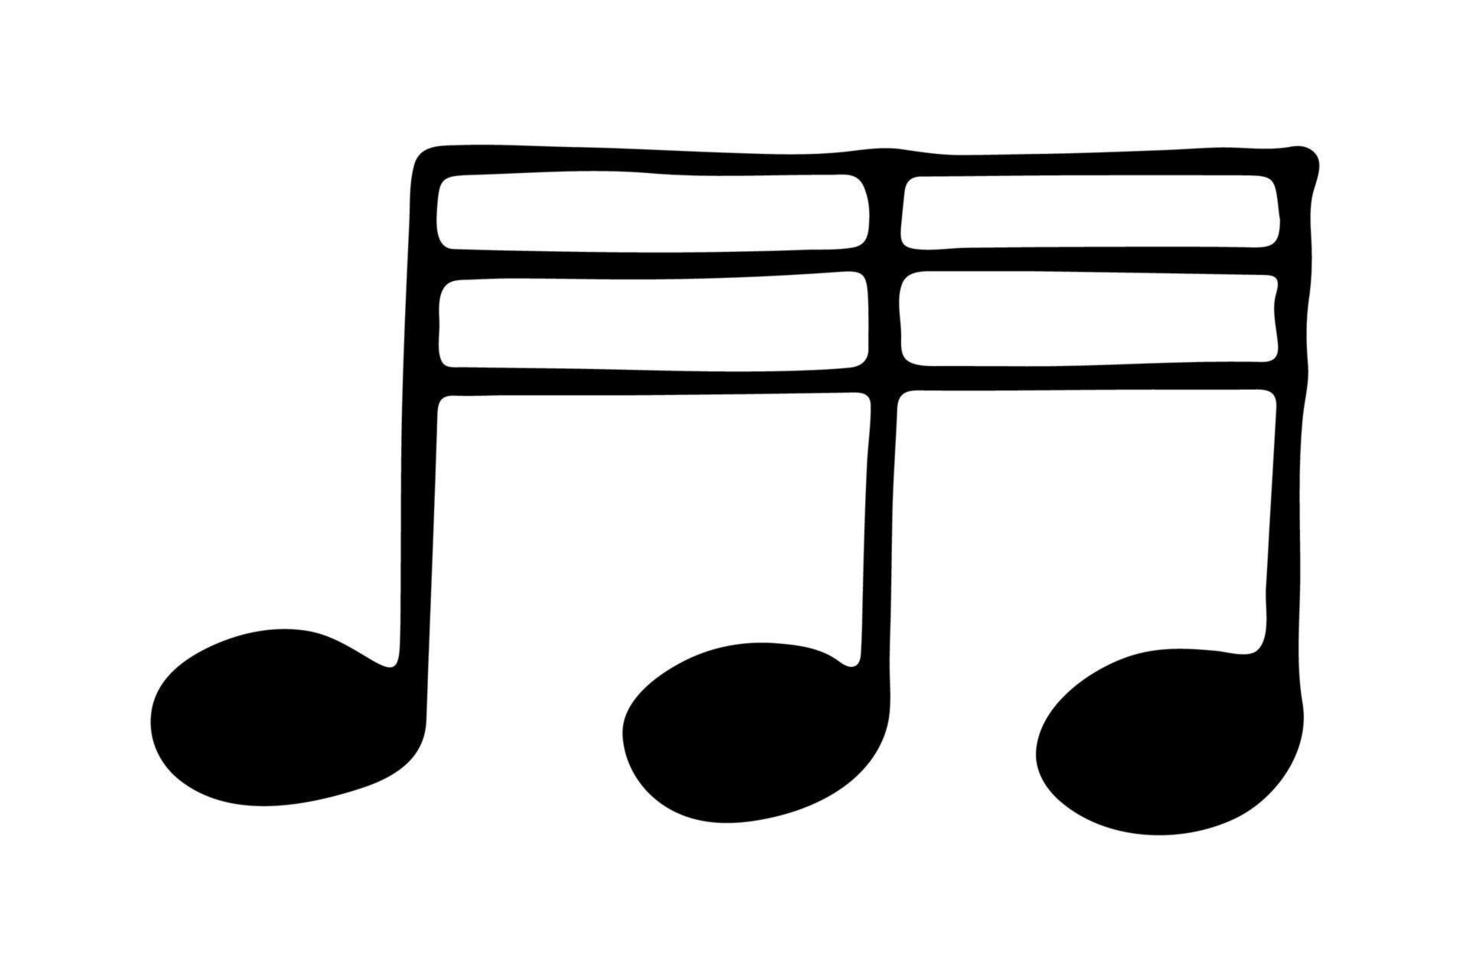 Musiknoten-Doodle. hand gezeichnetes musikalisches symbol. einzelnes element für print, web, design, dekor, logo vektor